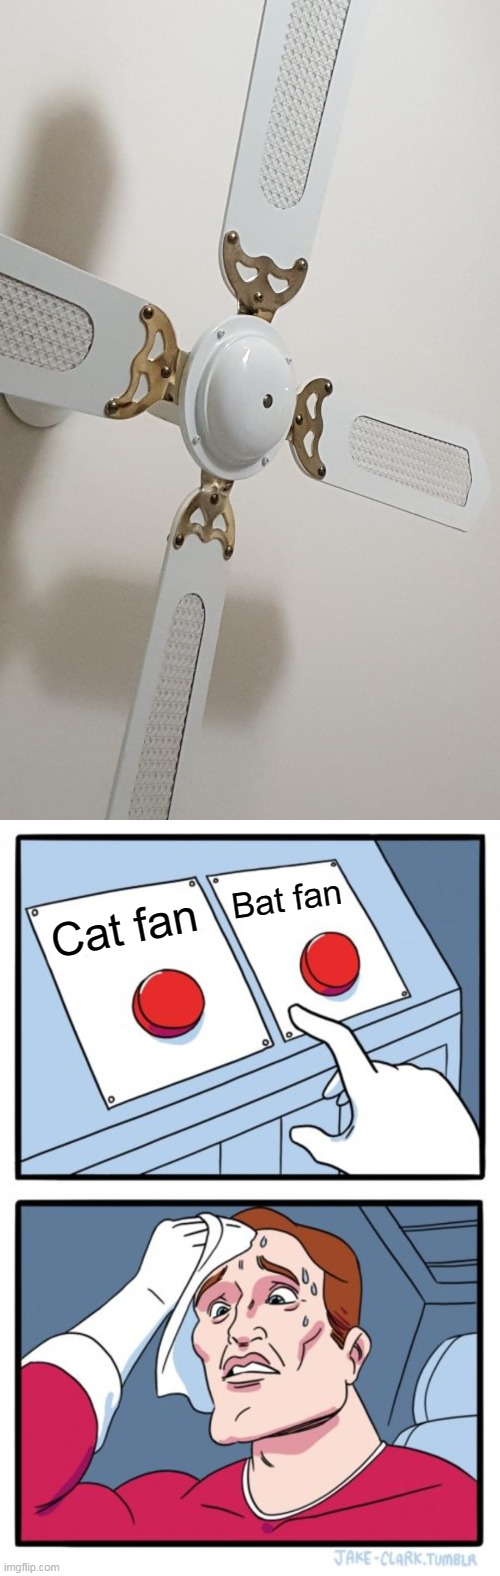 Similar Looks | Bat fan; Cat fan | image tagged in memes,two buttons,meme,humor | made w/ Imgflip meme maker